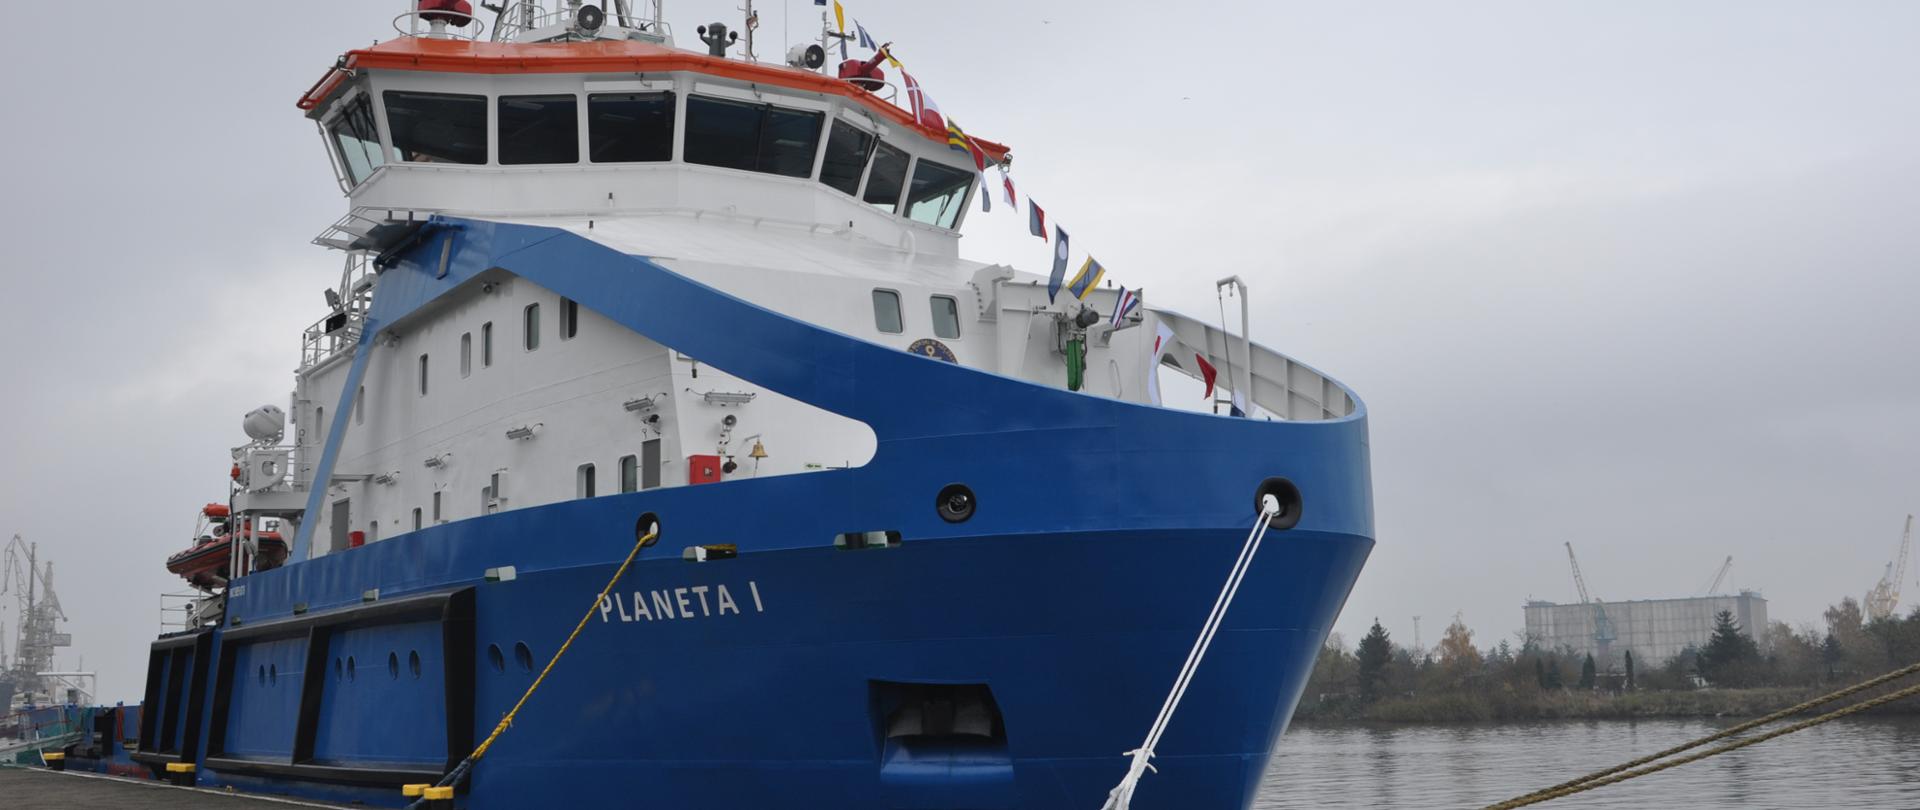 Nowy polski lodołamacz Planeta I rozpoczyna służbę na morzu